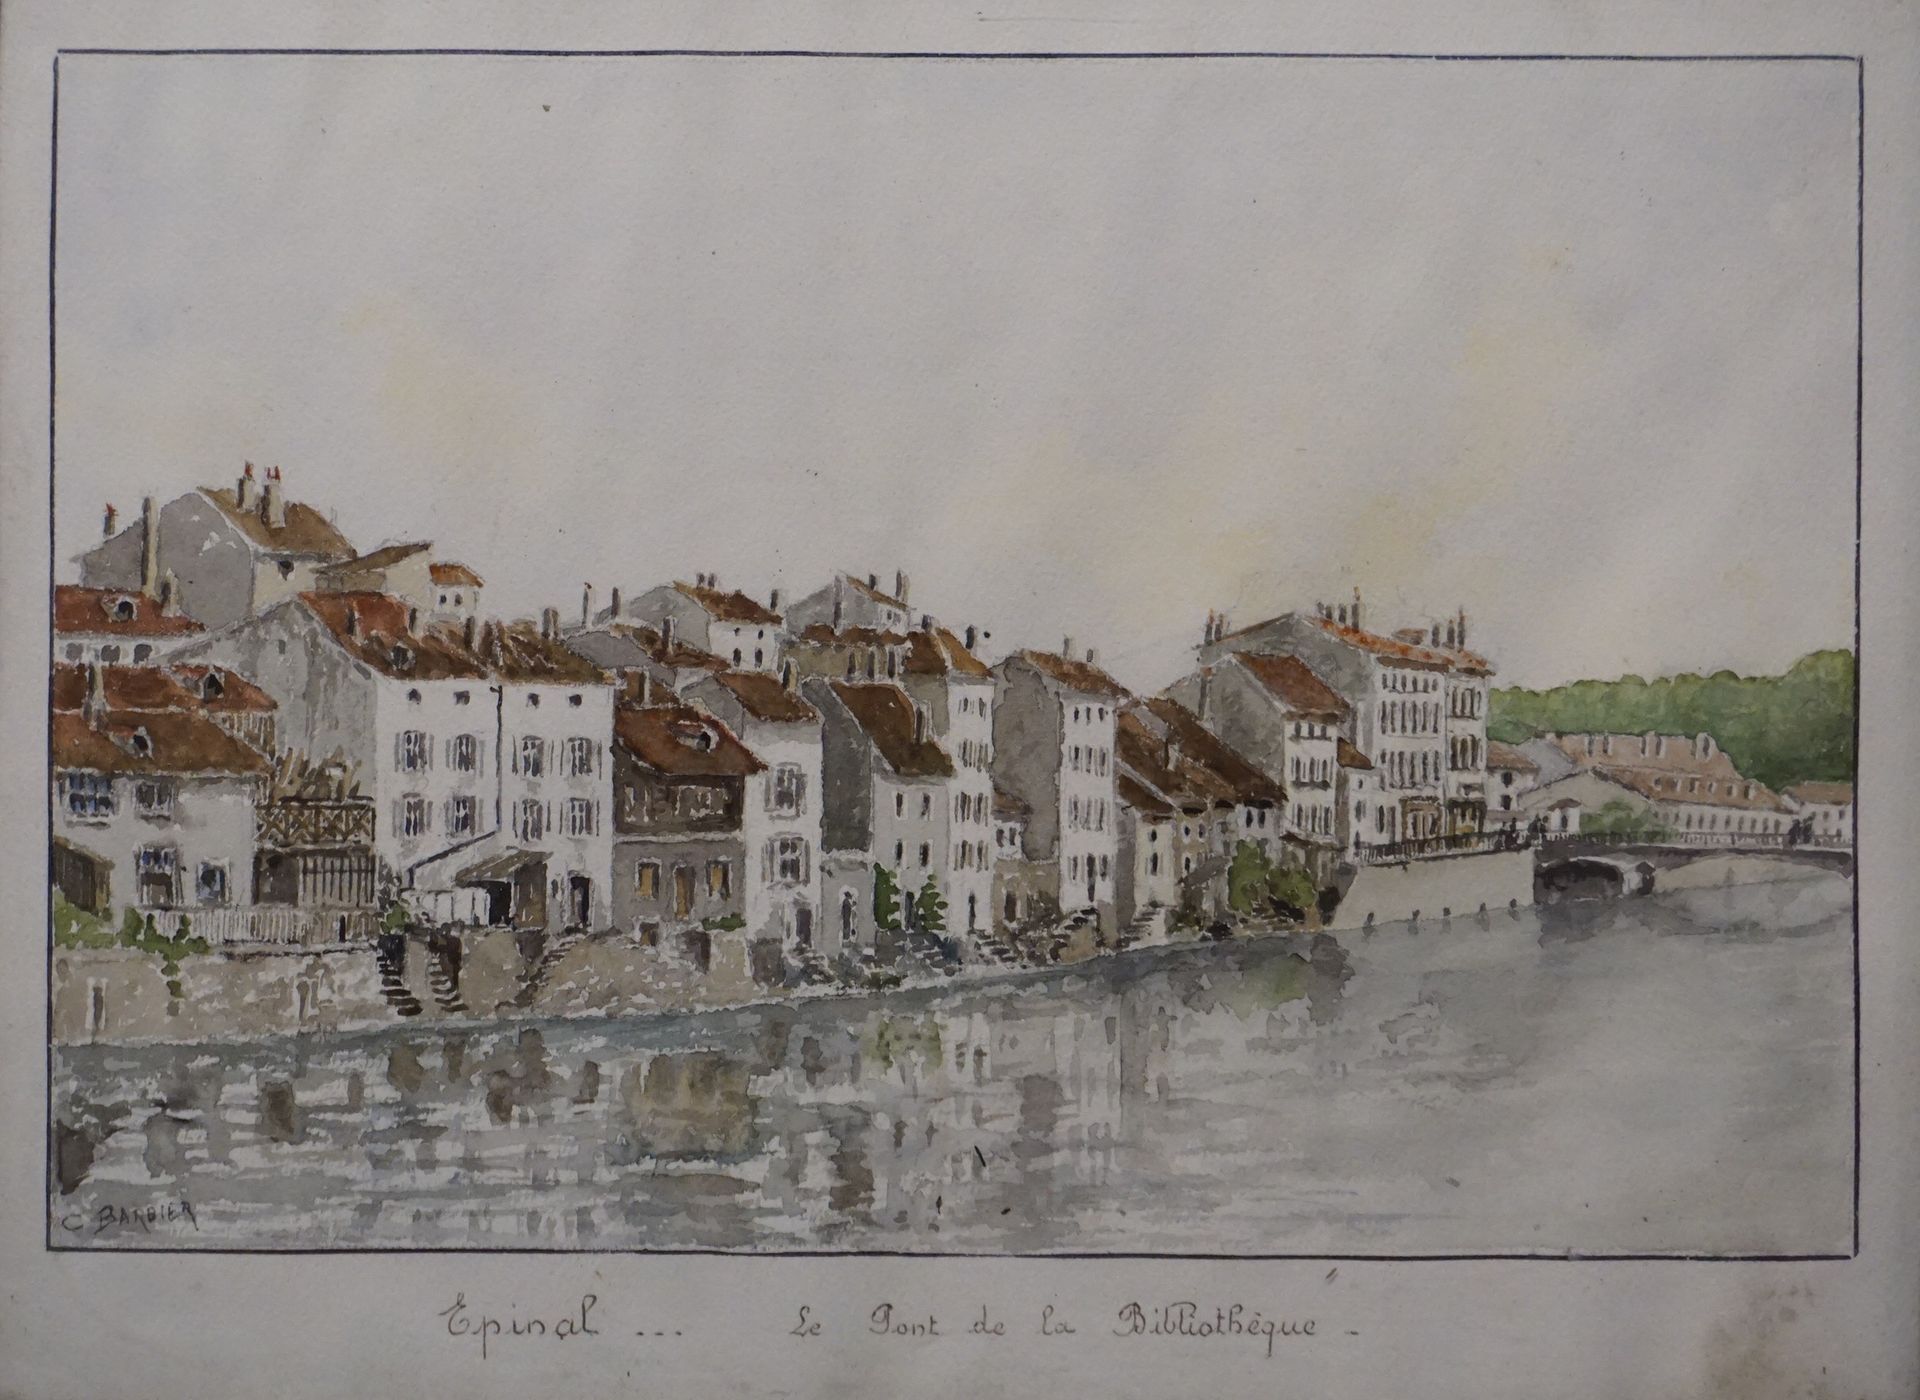 C. BARBIER "Epinal, le pont de la bibliothèque", watercolor, sbg. 25x34 cm